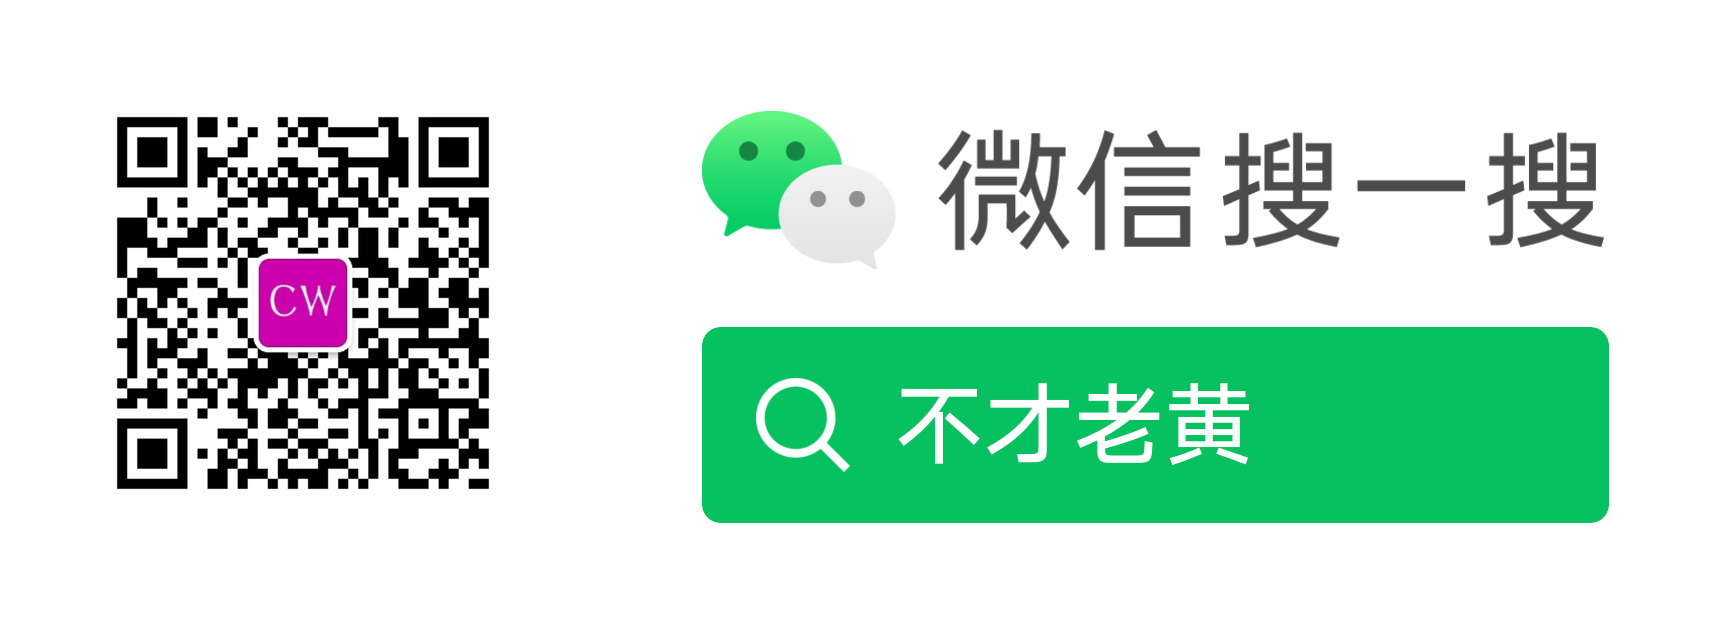 Включи на китайском 1 2. 微光app.